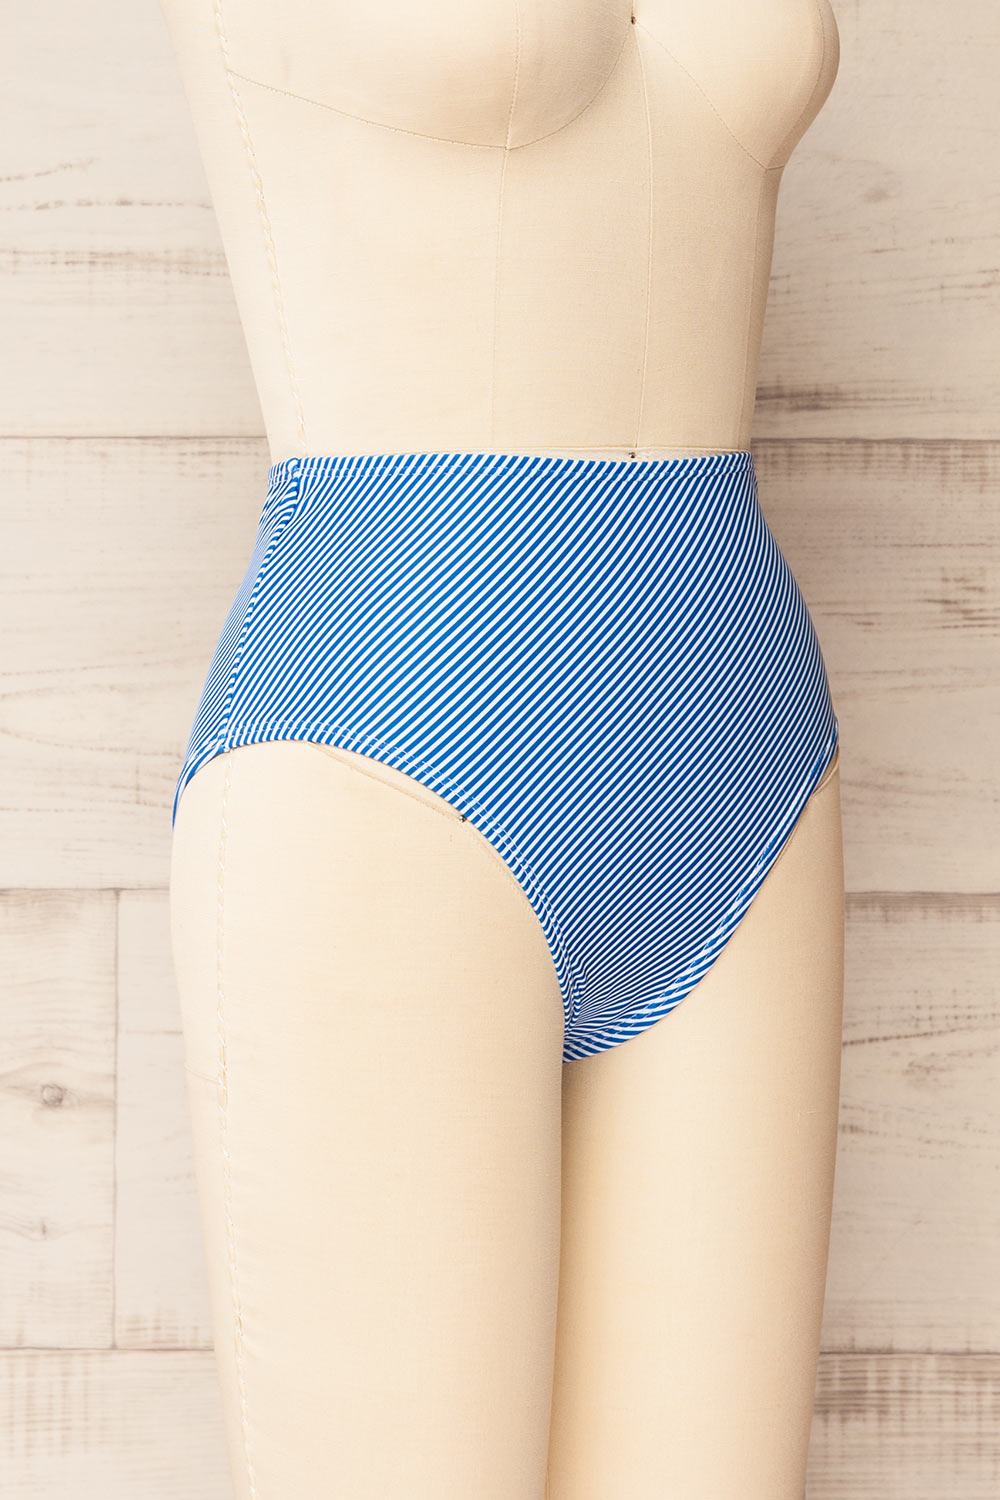 Engel Stripes Blue High-Waisted Bikini Bottom | La petite garçonne  side view